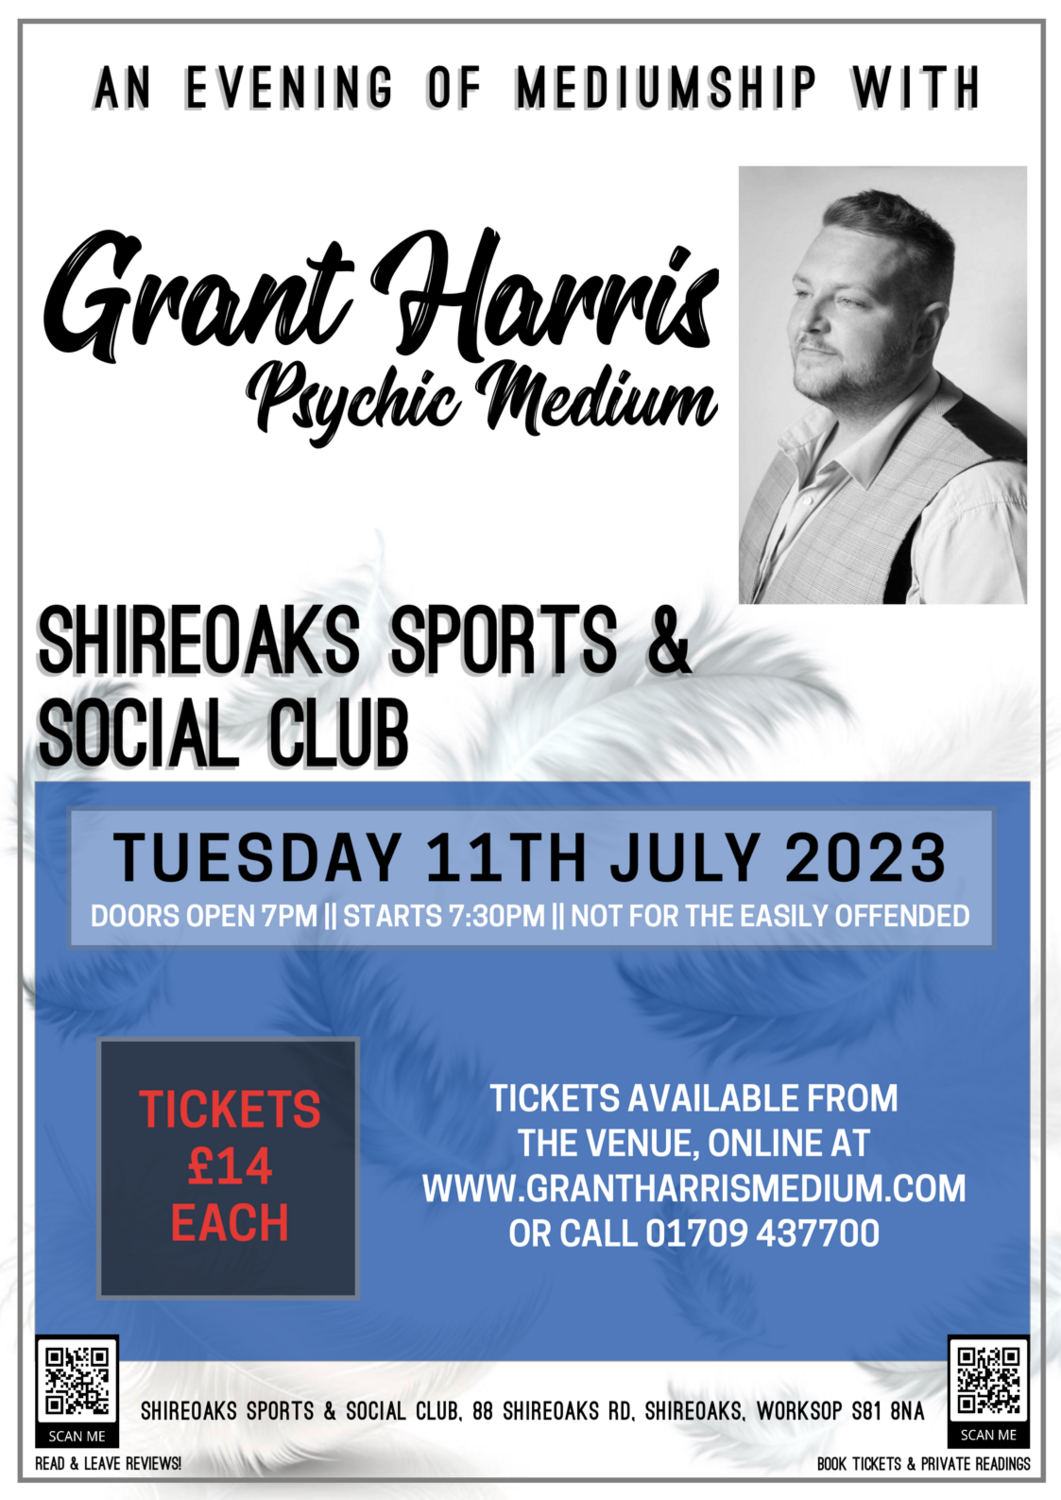 Shireoaks Sports & Social Club, Tuesday 11th July 2023